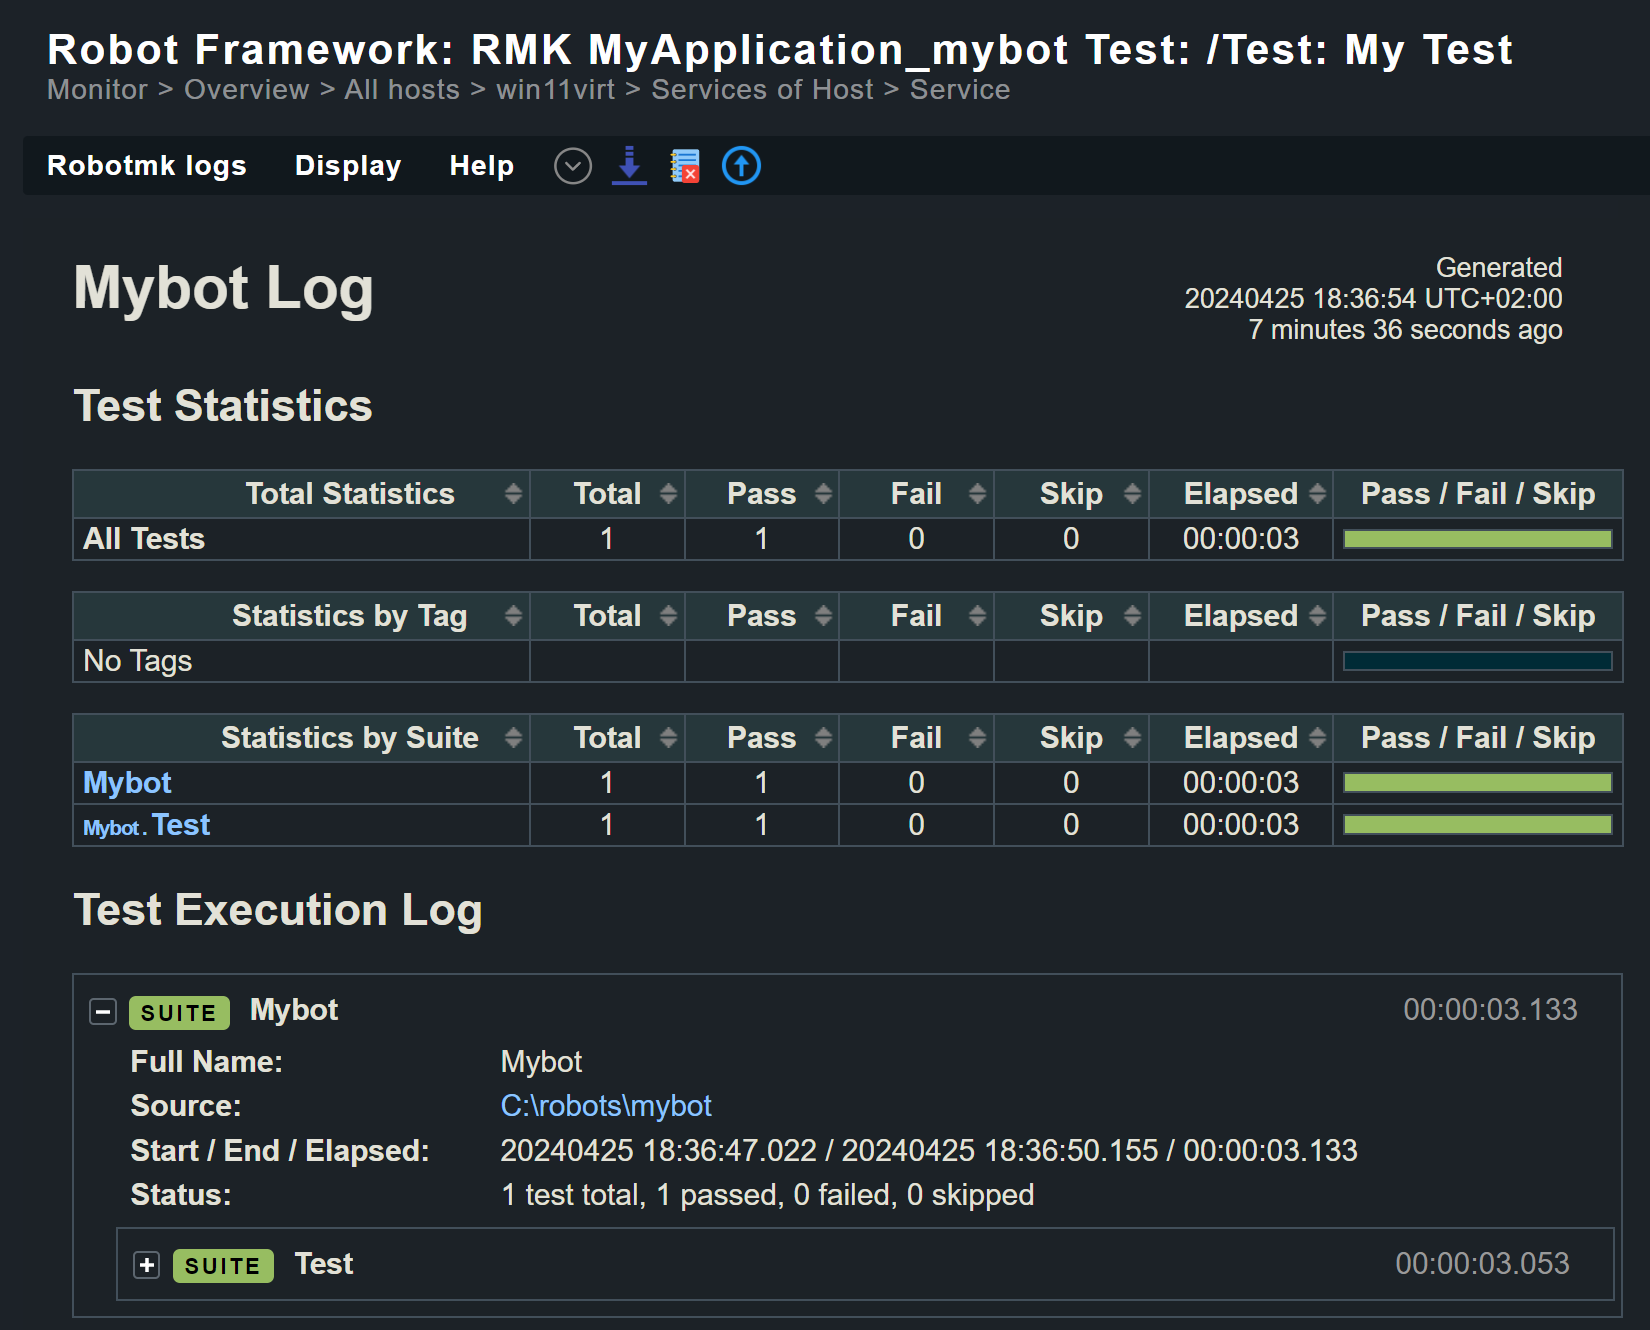 Robot framework report for 'Mybot' test suite.